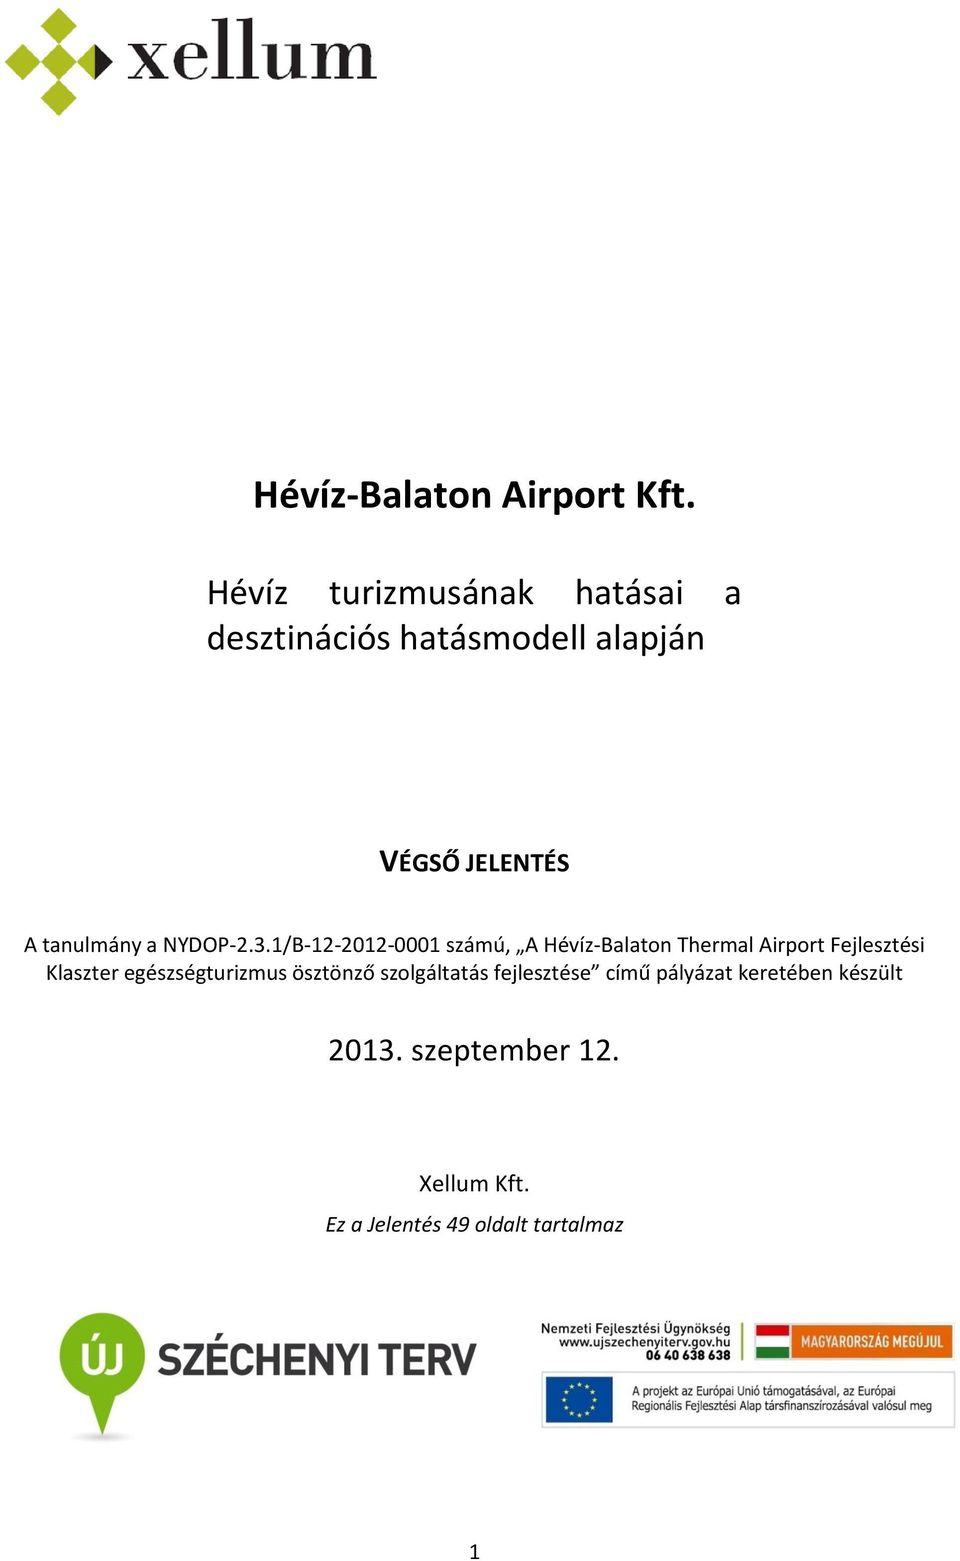 1/B-12-2012-0001 számú, A Hévíz-Balaton Thermal Airport Fejlesztési Klaszter